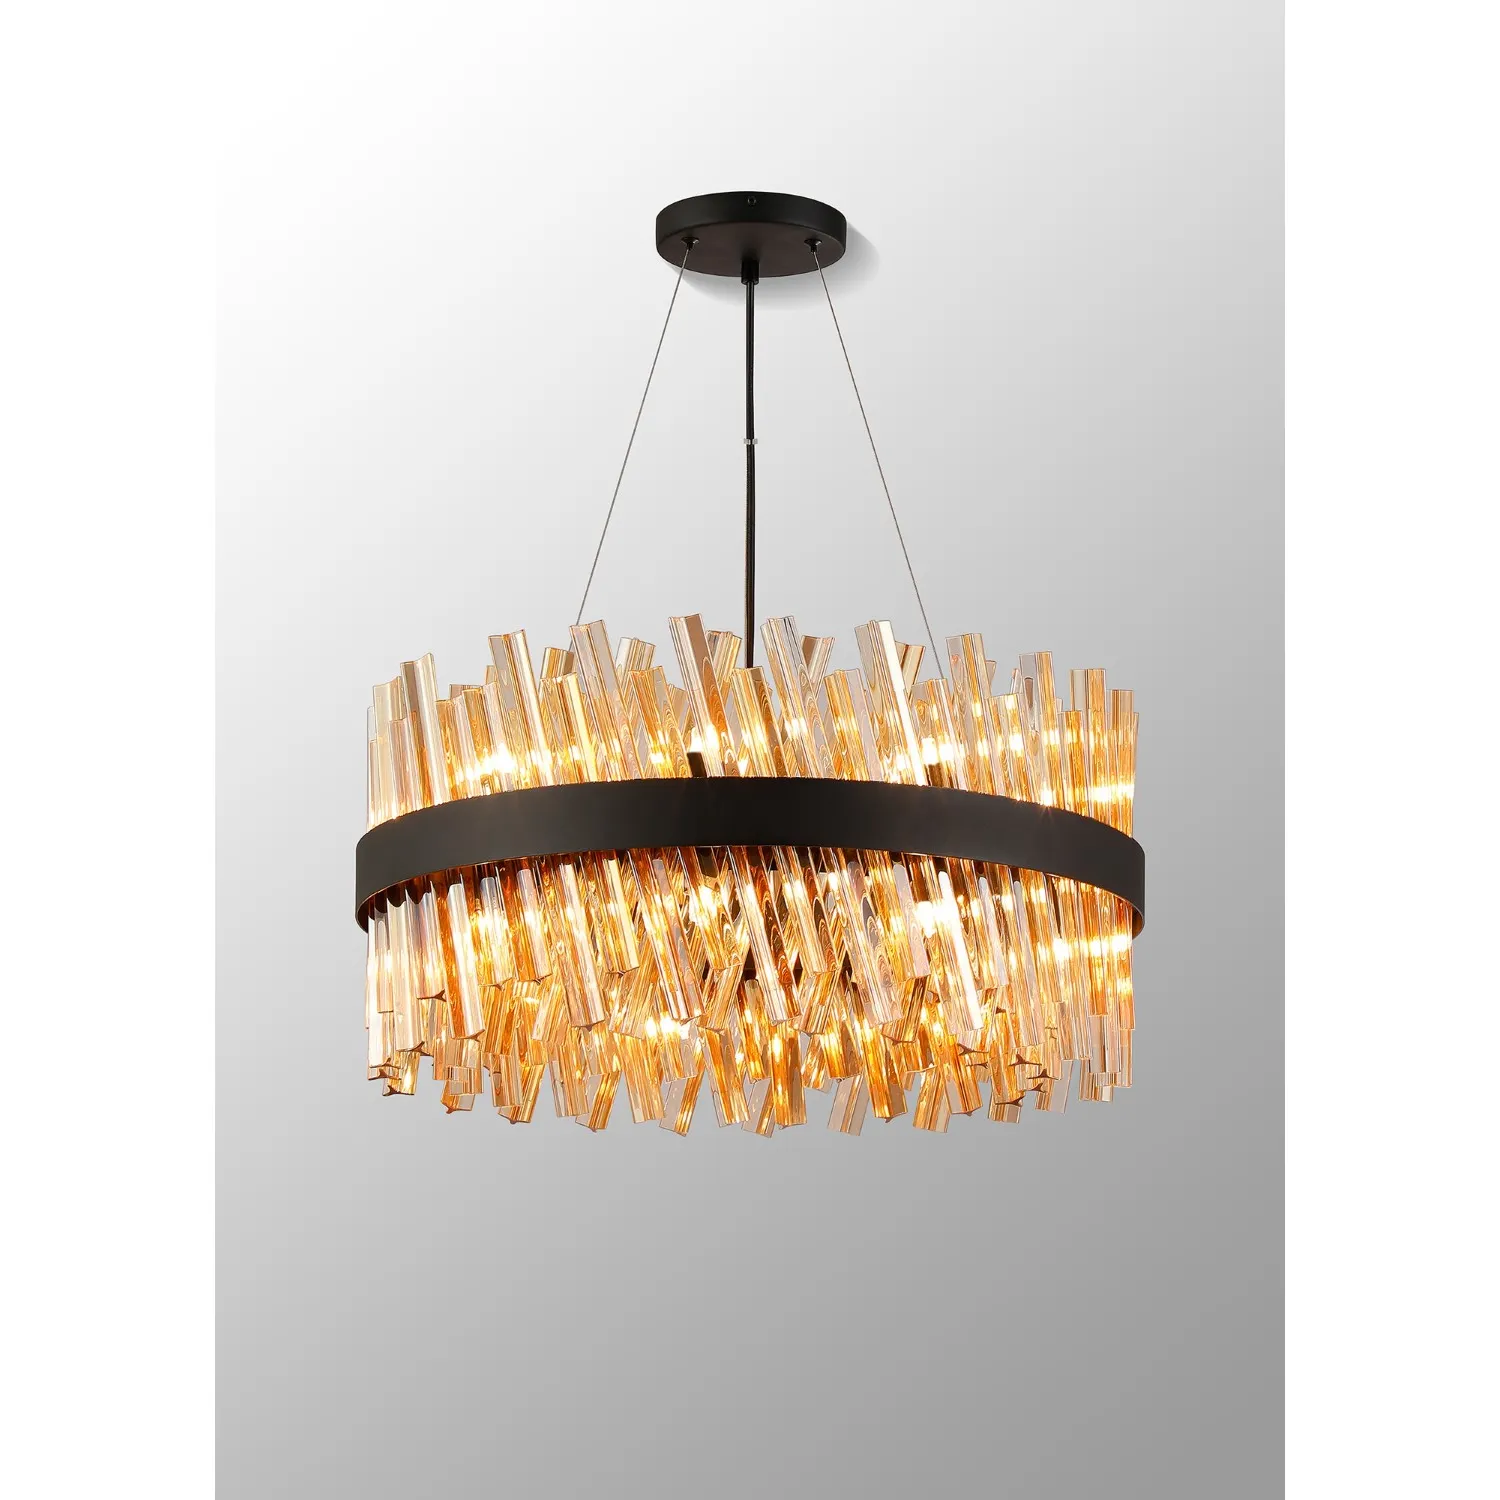 Satin Black Amber 60cm Pendant Light 18 G9 Lamp Holders